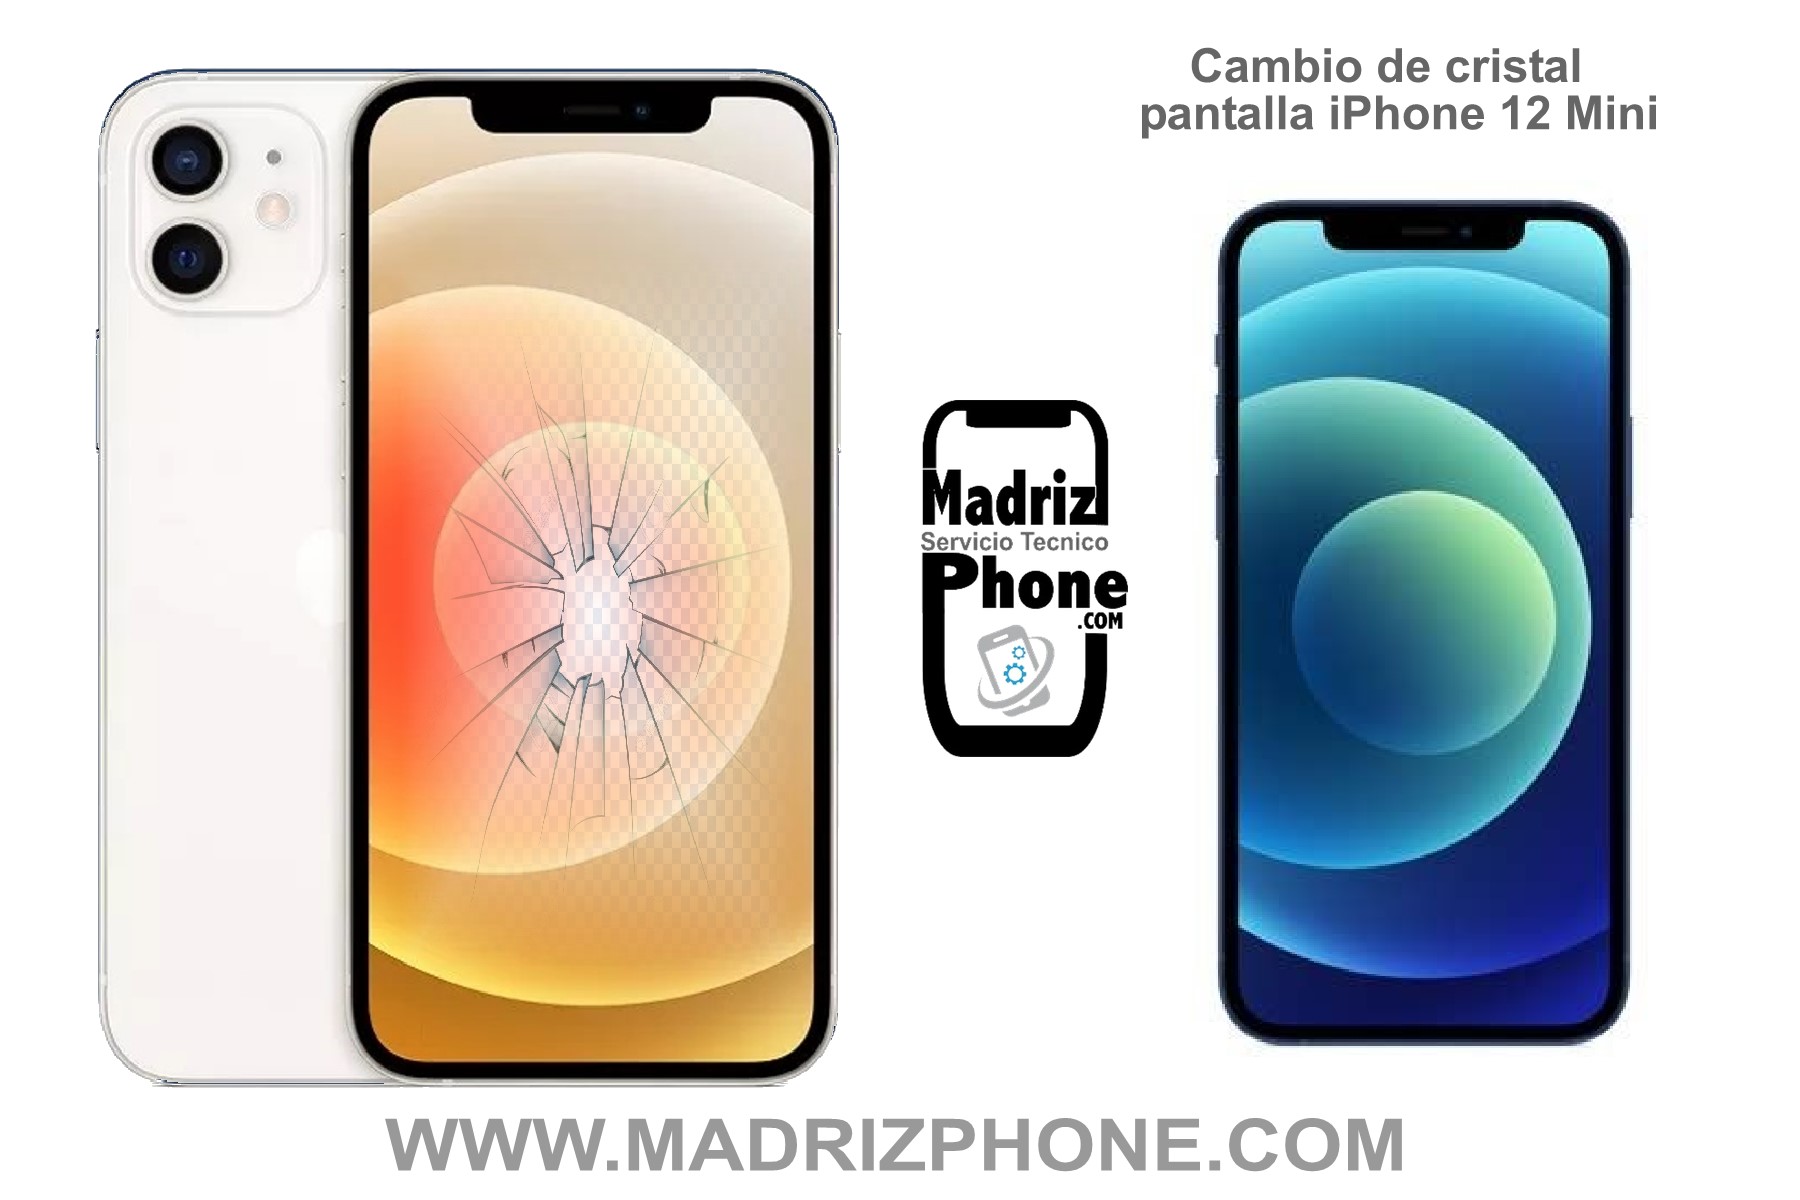 REPARAR en el ACTO Apple iPhone 12 Mini en MADRID 79€ Garantía - Servicio  Tecnico Reparacion y Liberacion de Mòviles,tablet en Madrid, Cambio de  pantallas en 1 hora, accesorios,venta de moviles